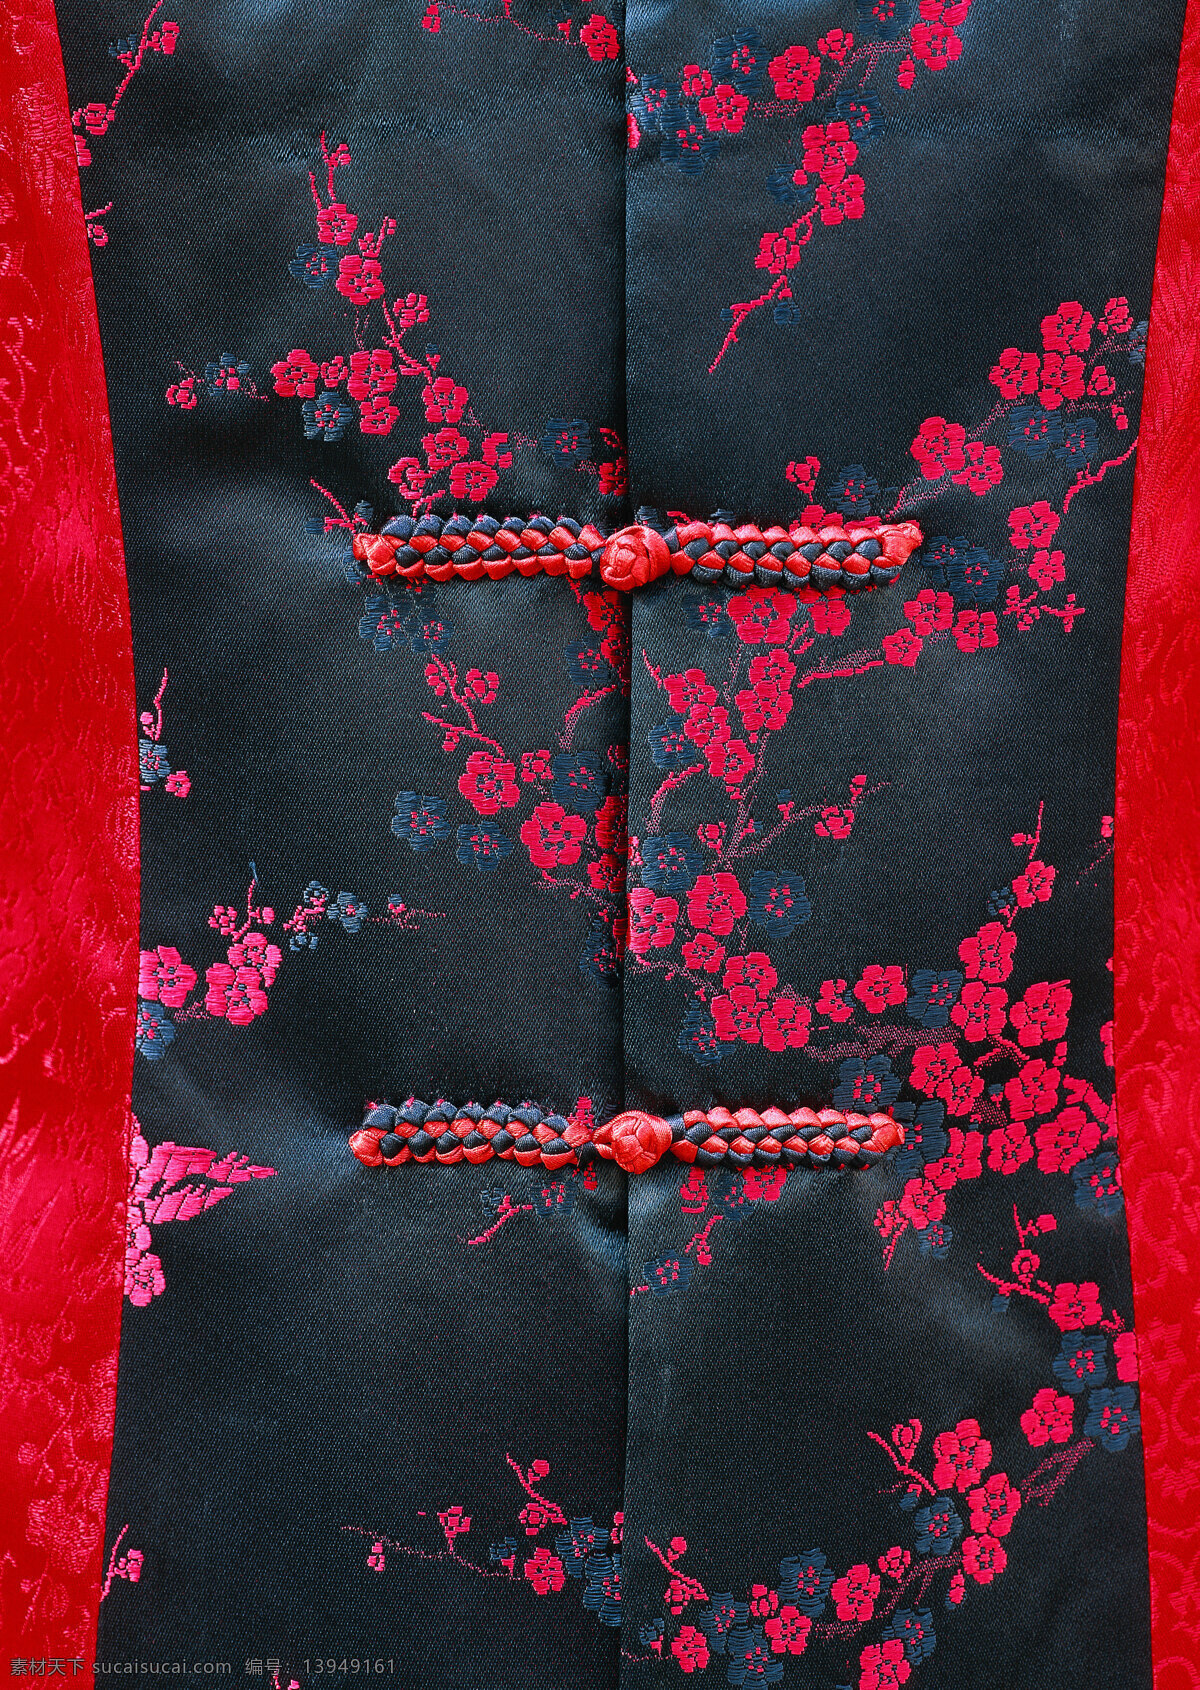 纽扣 唐装 布料 丝绸 针织 刺绣 古典 典雅 中国风 文化 高清 人文素材 文化艺术 传统文化